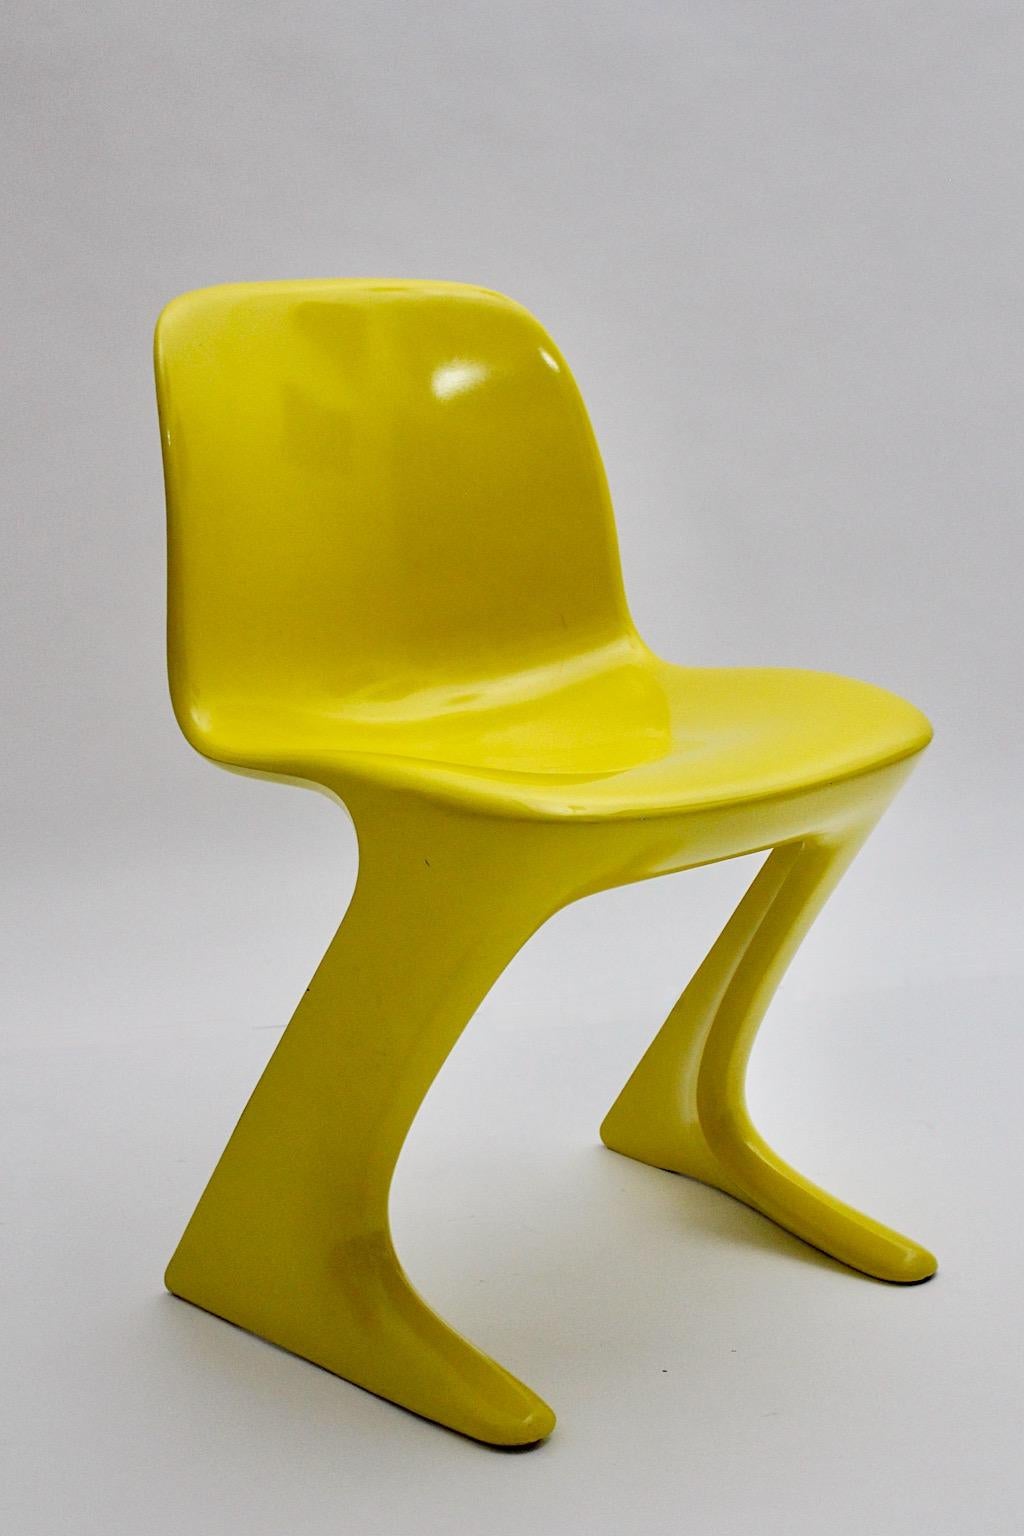 Space Age vintage Stuhl oder Beistellstuhl Modell Känguru Stuhl oder Z Stuhl aus gelbem Kunststoff von Ernst Moeckl für Baydur, W-Deutschland, 1960er Jahre.
Sehr selten in der fröhlichen Sonnenschein Farbe gelb zu finden, sehr geeignet für die